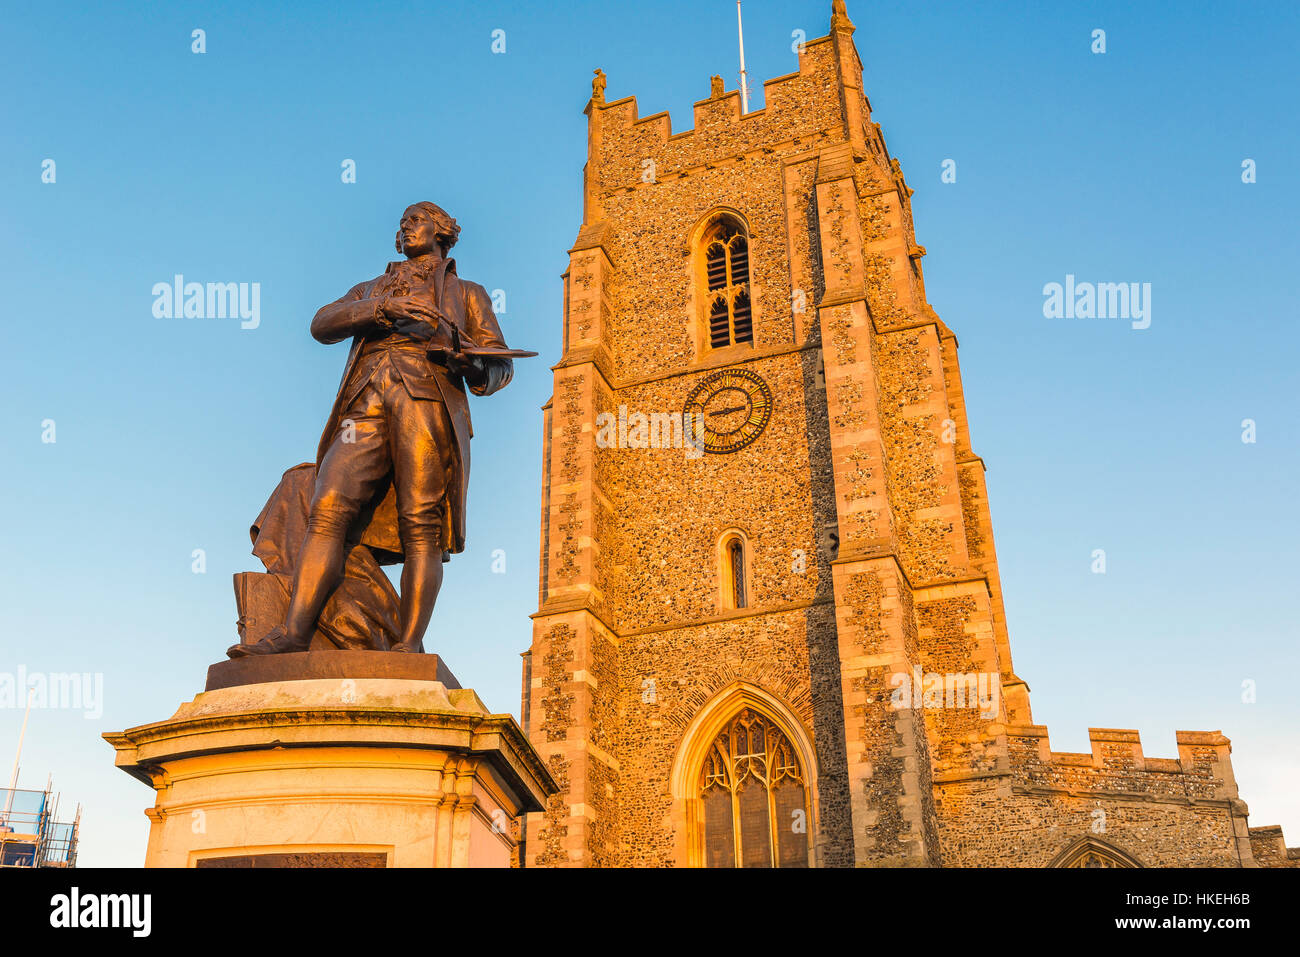 Thomas Gainsborough, vue sur la statue de l'artiste Thomas Gainsborough, situé sur la place du marché de Sudbury, son lieu de naissance, Suffolk, Angleterre, Royaume-Uni. Banque D'Images